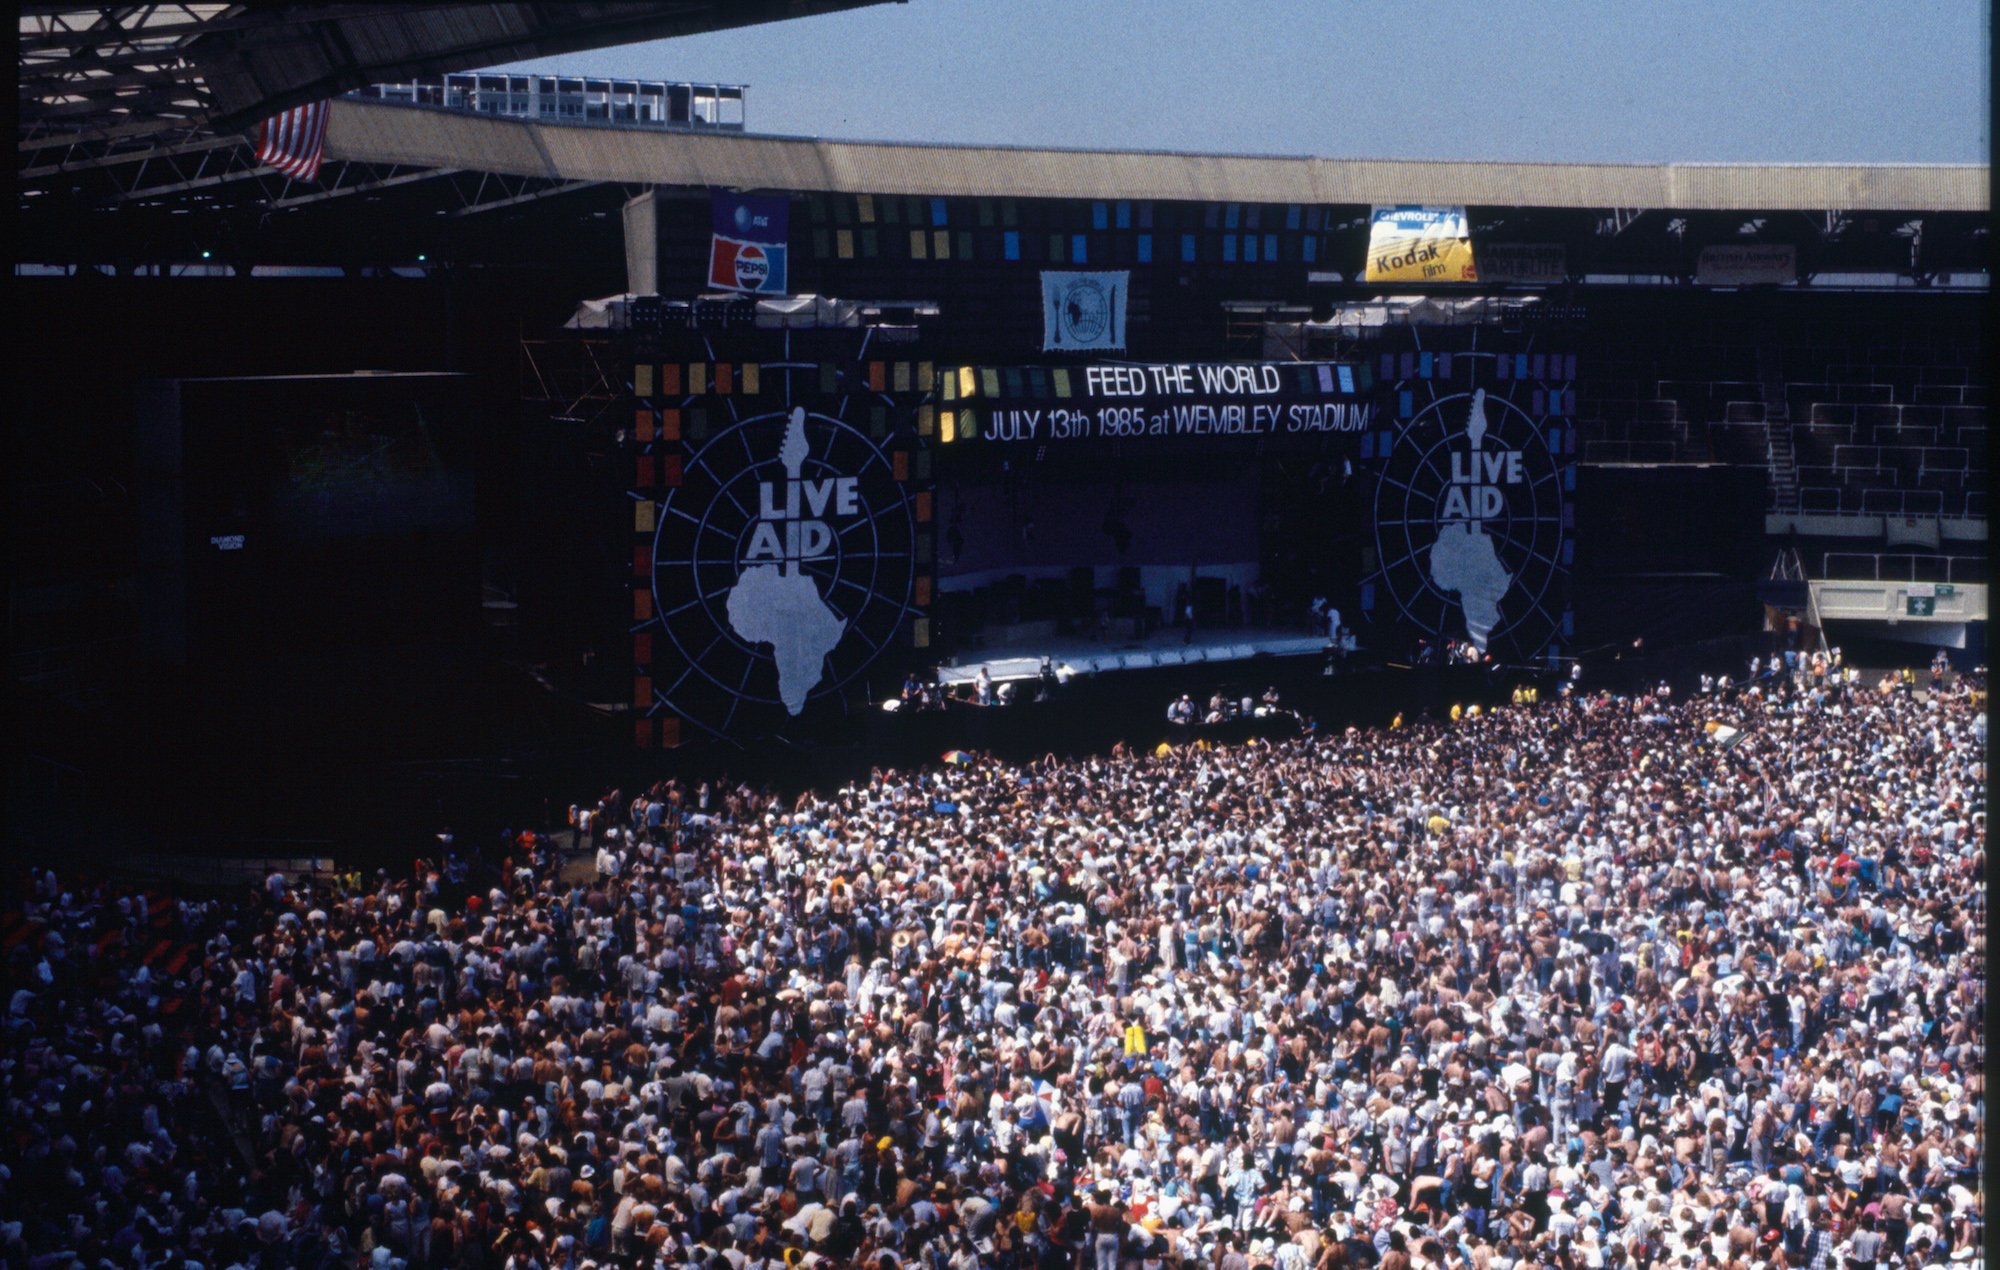 Стадион уэмбли 1986. Концерт Live Aid 1985 Queen. Куин 1985 стадион Уэмбли. Live Aid стадион Уэмбли. Концерт на Уэмбли 1985 куин.